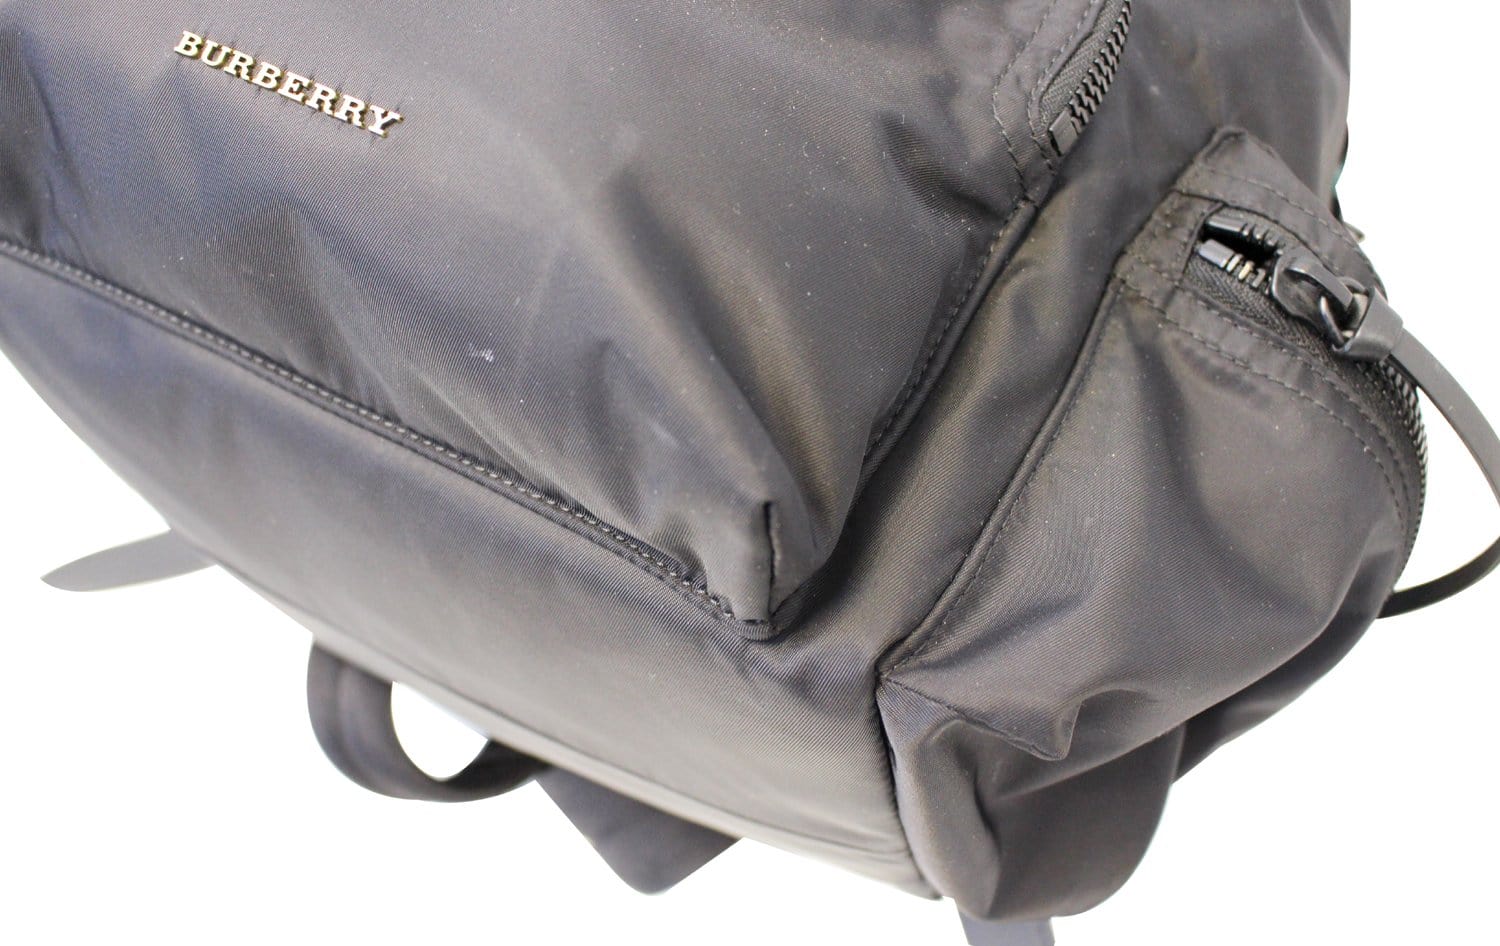 BURBERRY Black Technical Nylon Medium Rucksack Backpack Bag TT2137